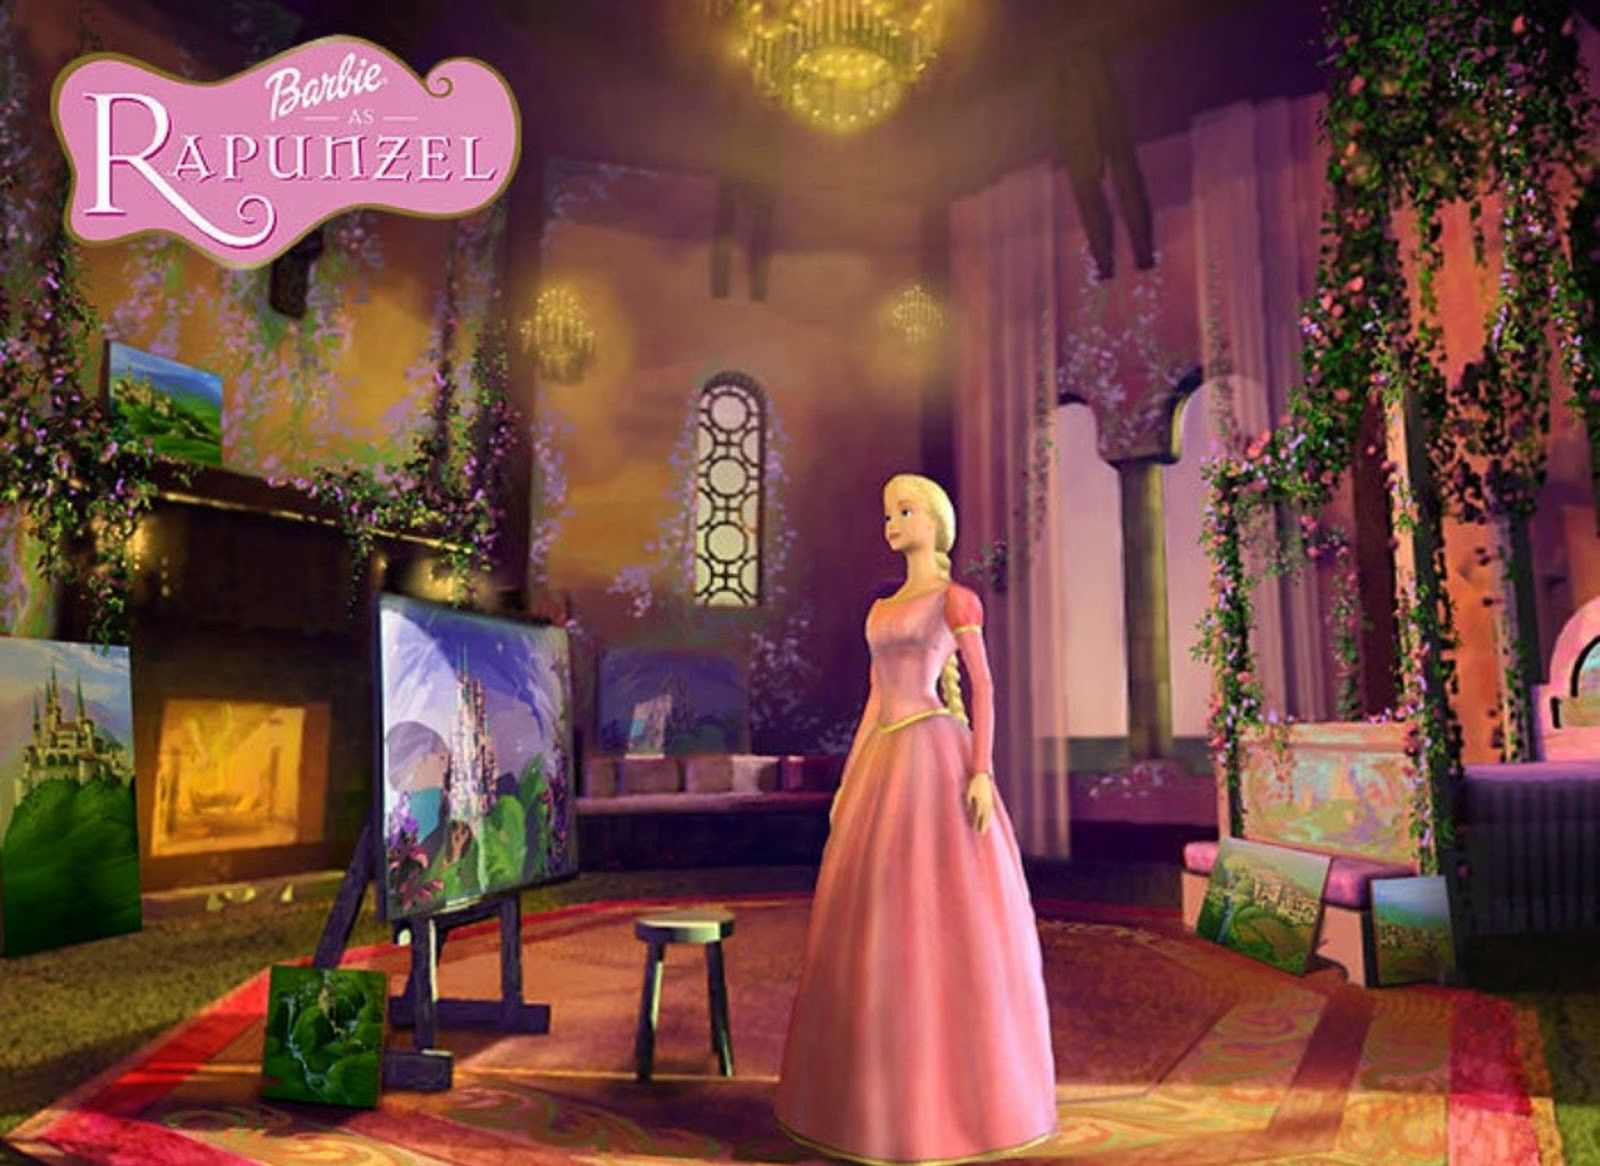 Nostalgia 7 Film Barbie Yang Sering Jadi Tontonan Waktu Kecil